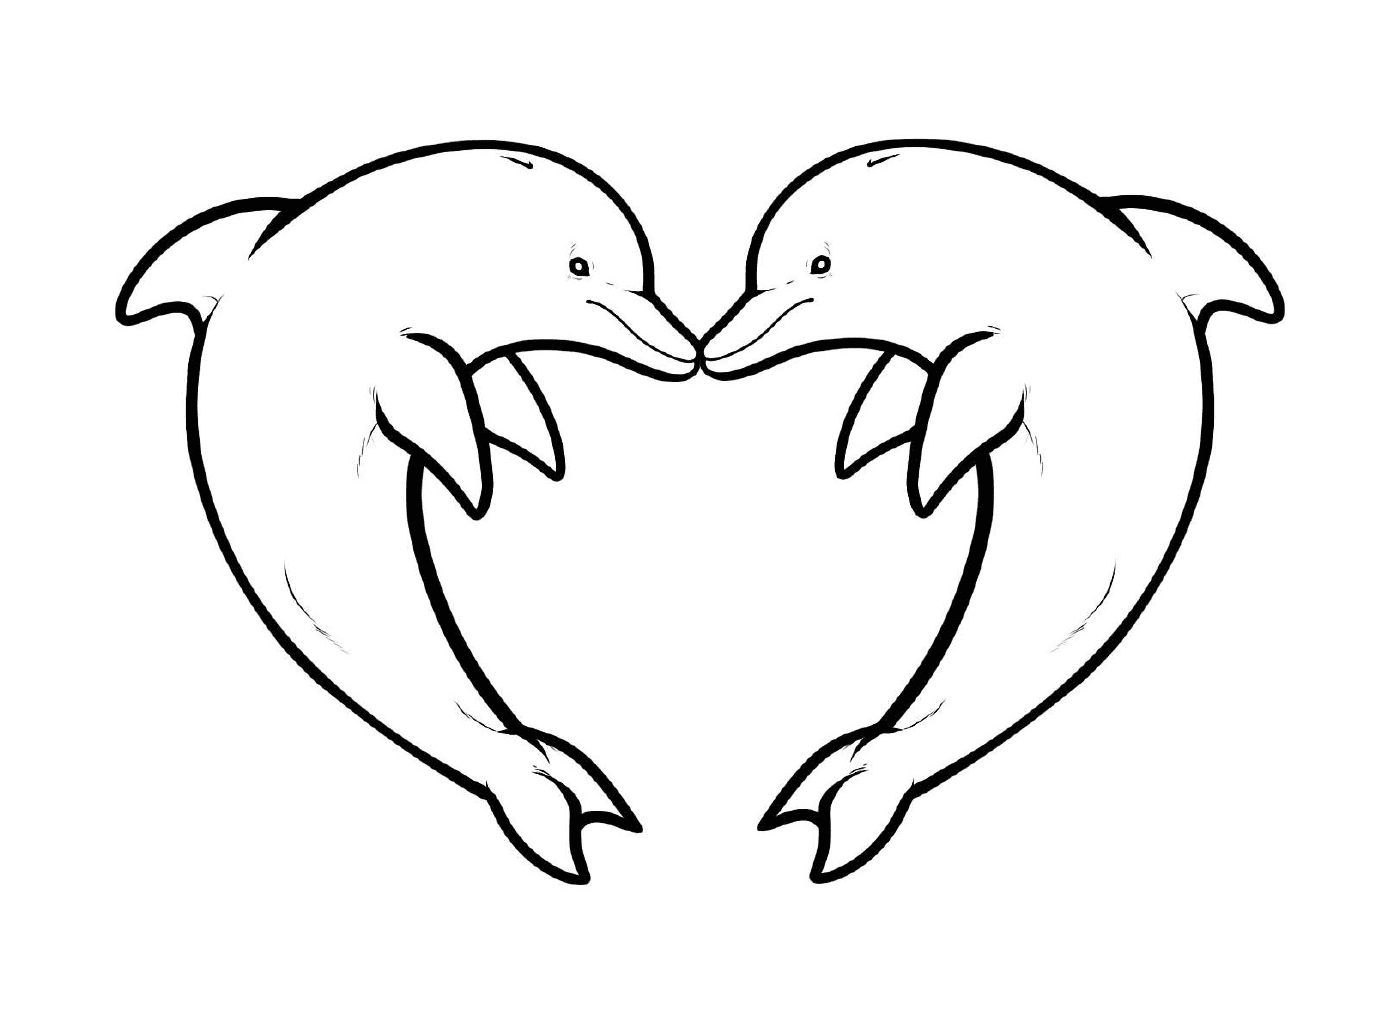  اثنين من الدلافين تشكل شكل قلب 